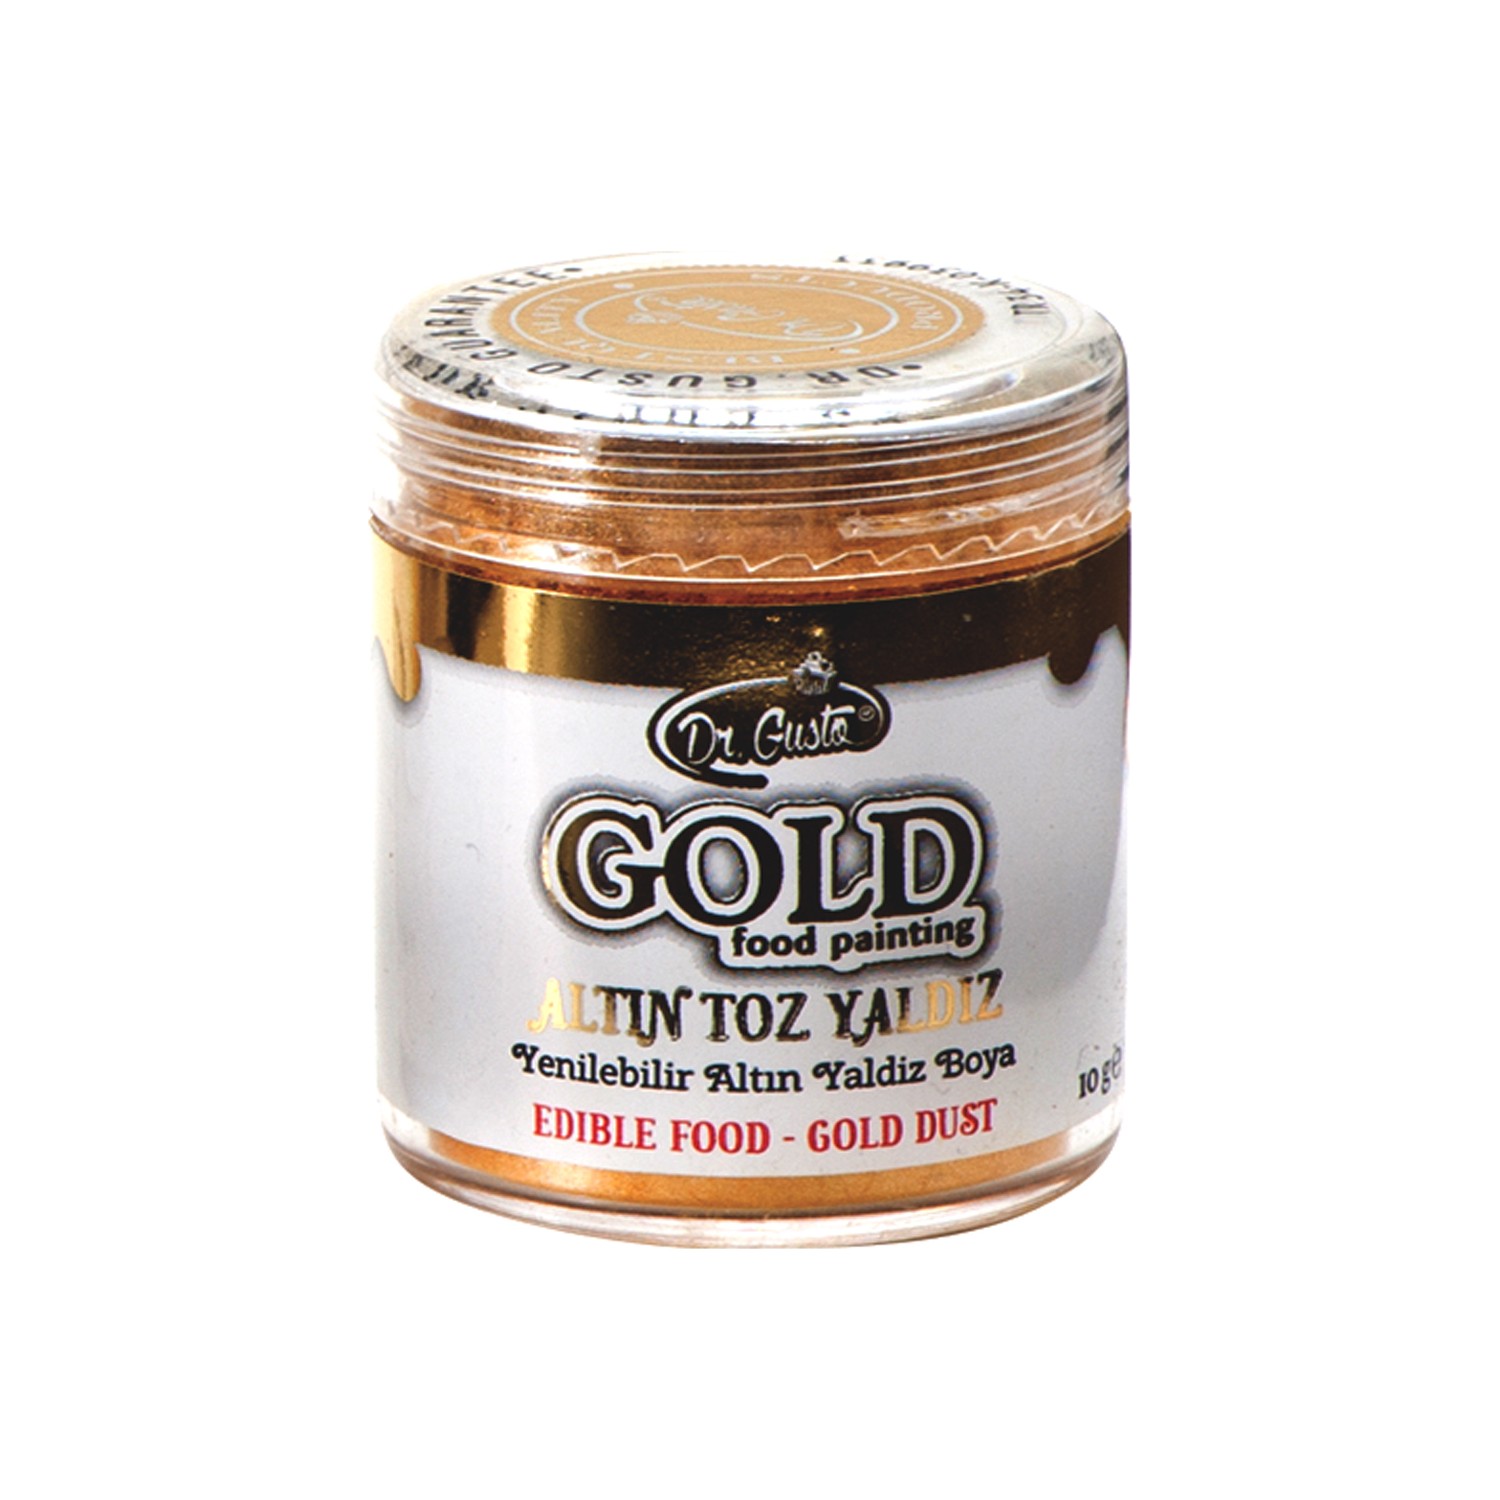 Dr Gusto Yenilebilir Metalik Toz Altın Yaldızlı Gold Boya 10 Fiyatı